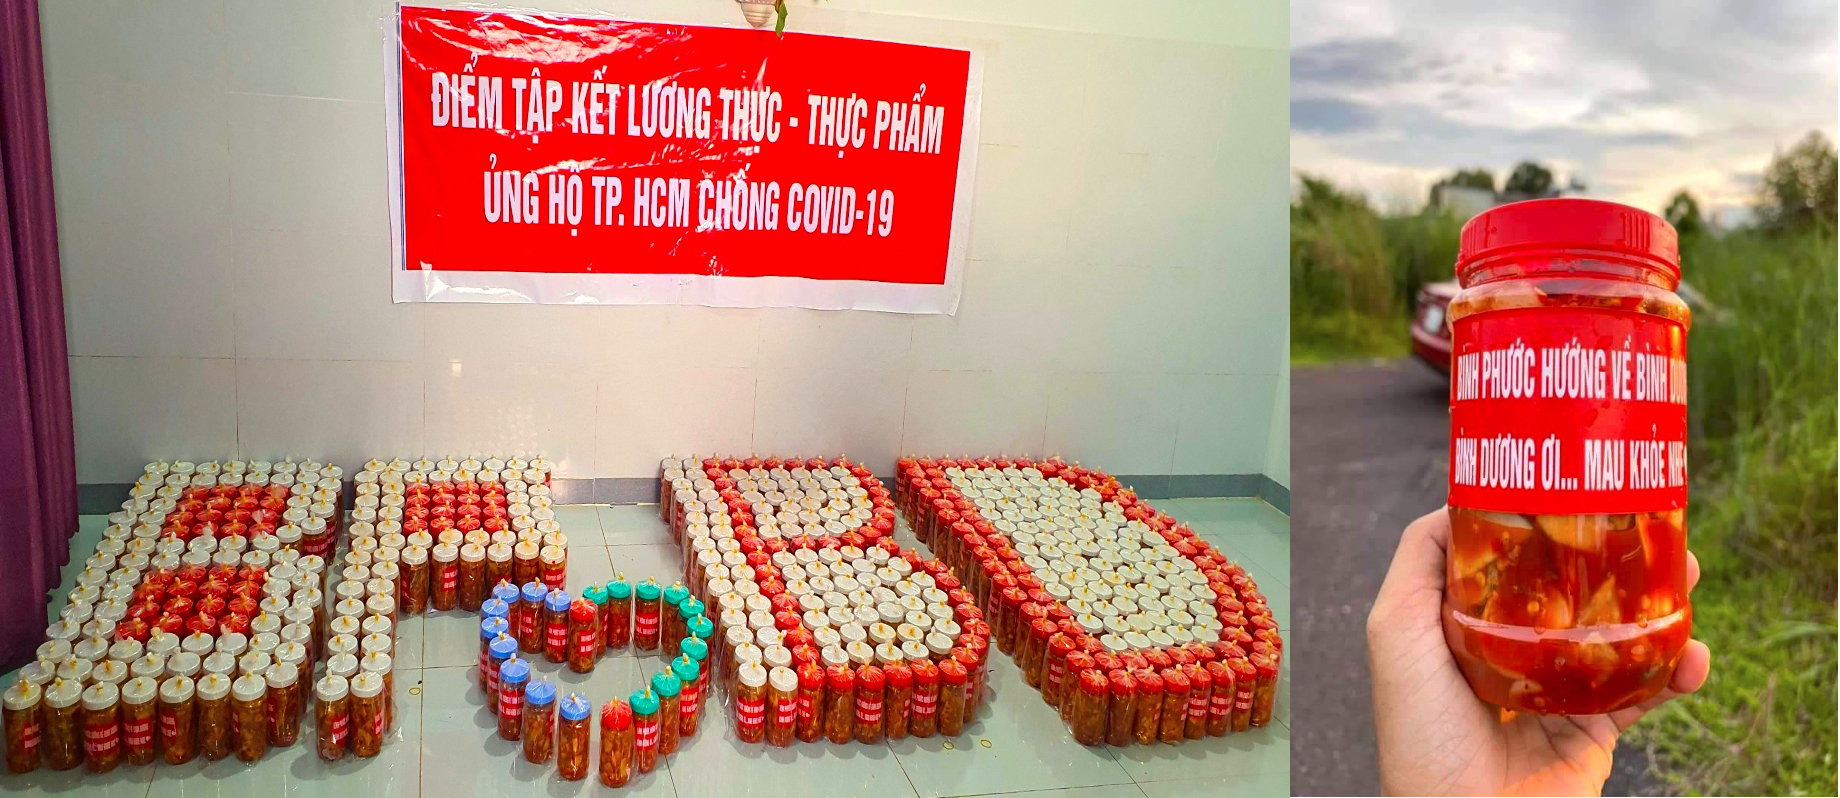 CLB Hạt Gạo Nhân Ái, Nhóm Bất Động Sản TP Đồng Xoài cùng người dân địa phương đã khéo gửi những thông điệp yêu thương của Bình Phước đến Bình Dương qua các món ngon nhà làm